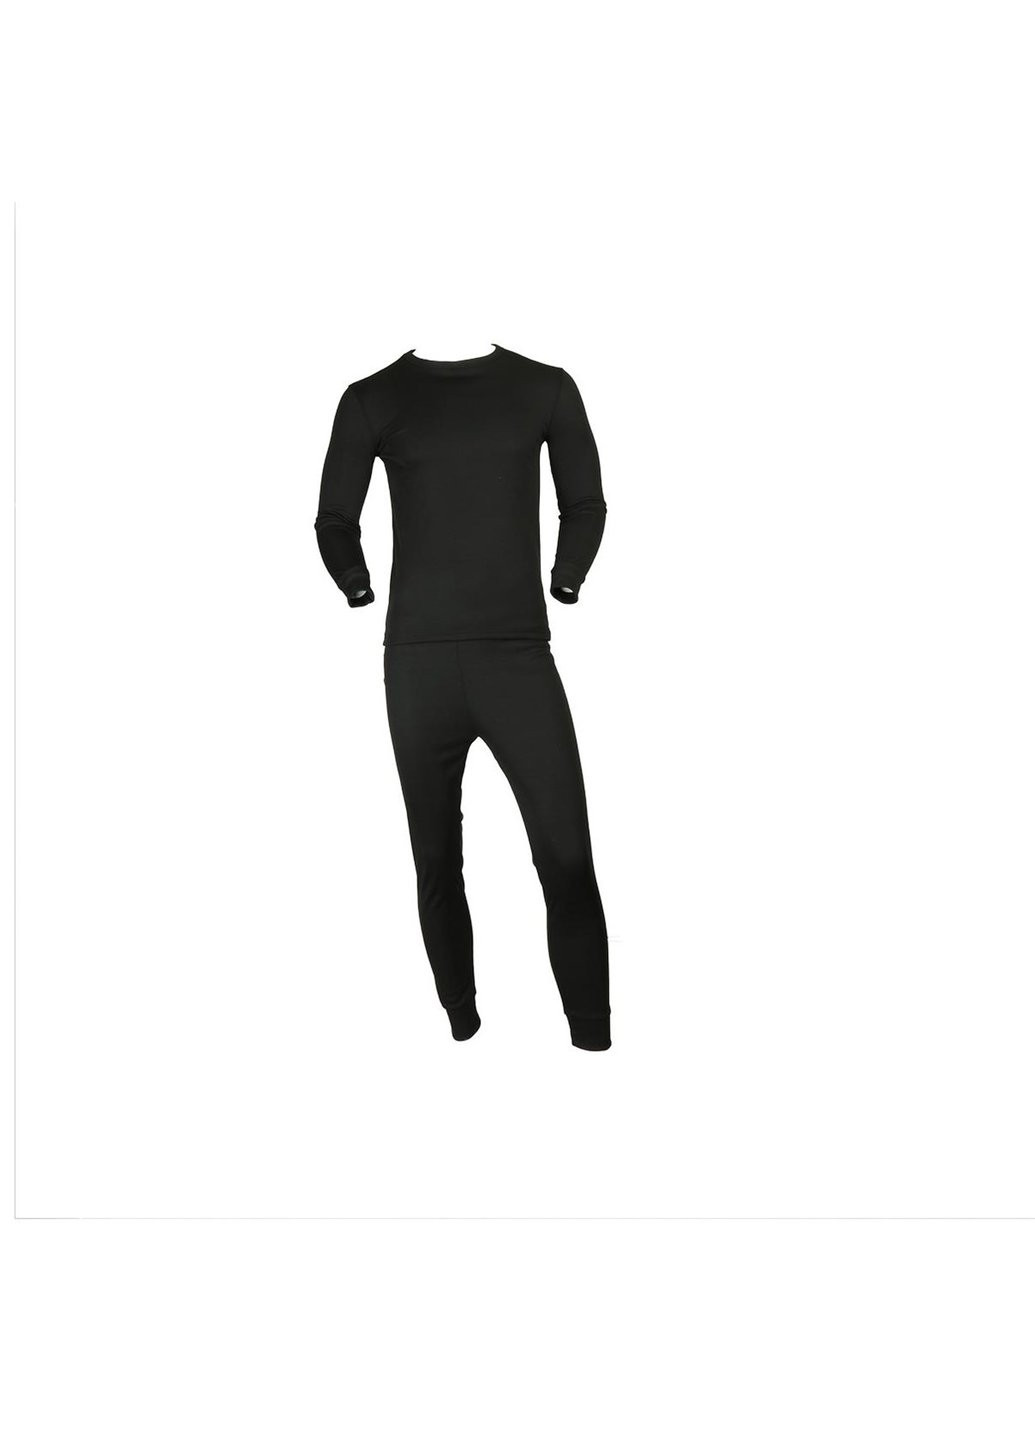 Черный летний термобелье мужское костюм dynamic турция l 8112 черное Thermo